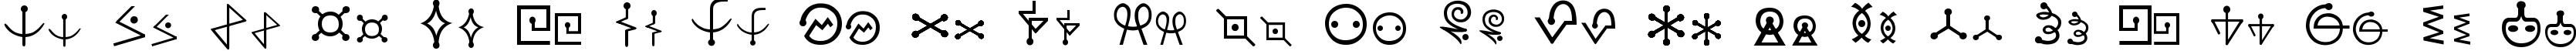 Пример написания английского алфавита шрифтом Futurama Alien Alphabet One